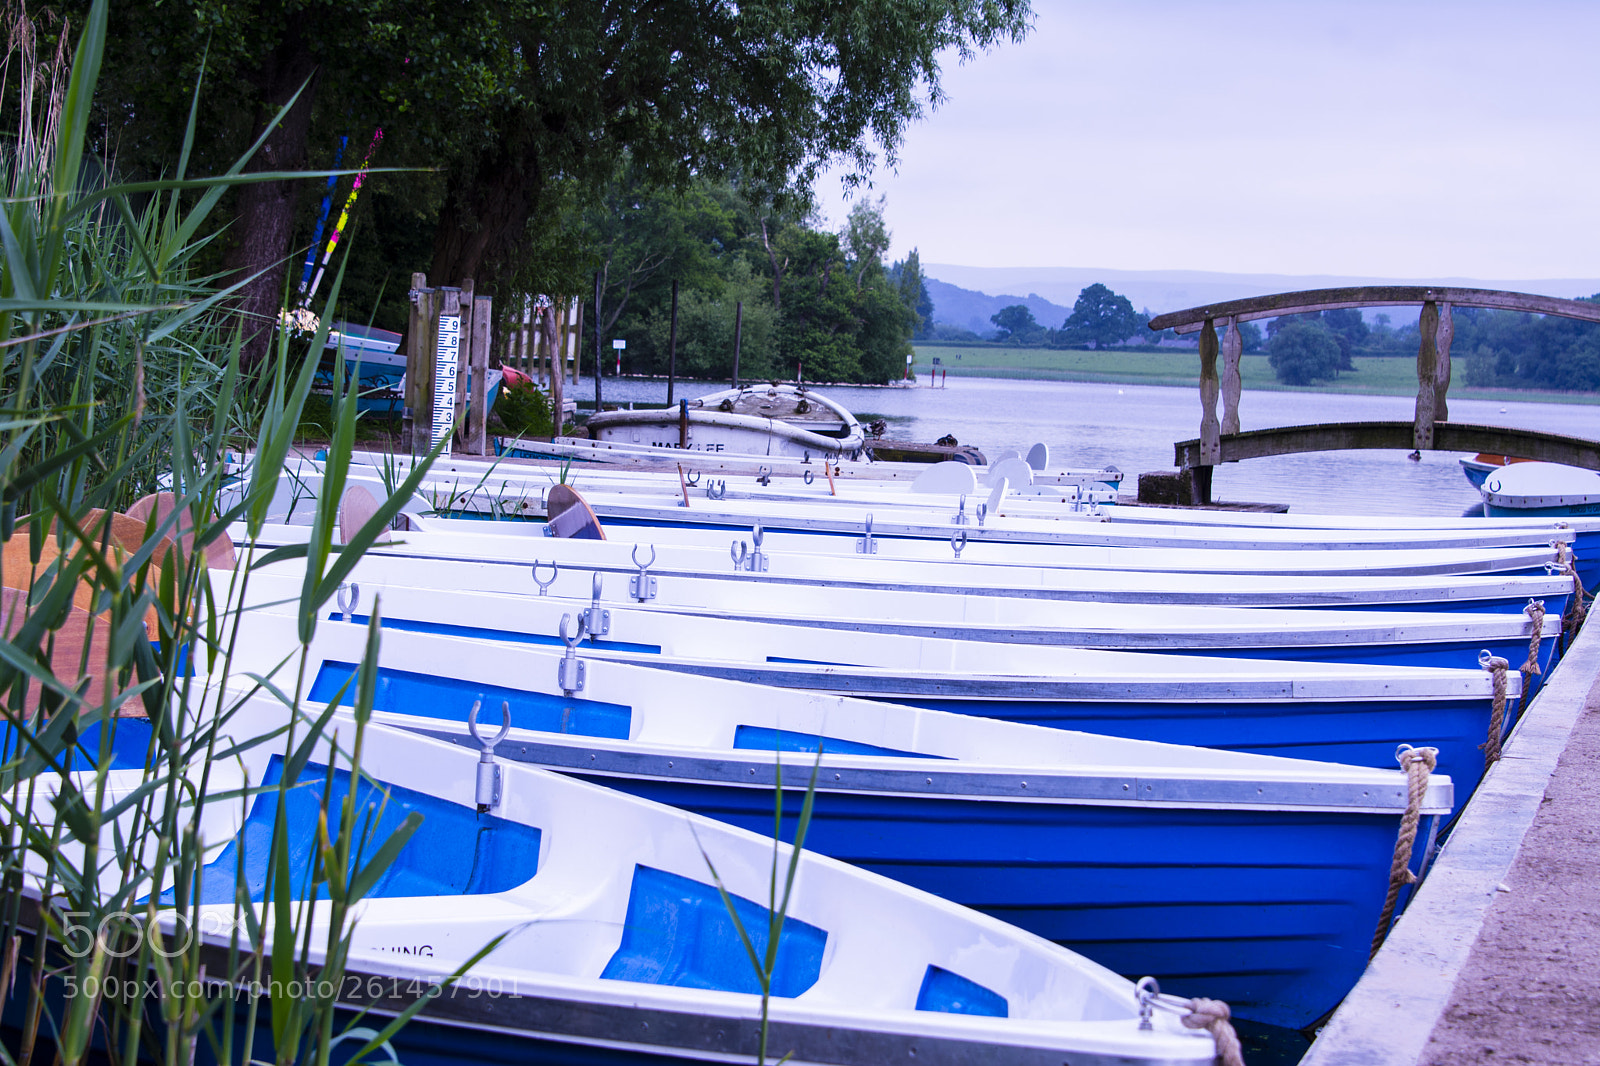 Nikon D7100 sample photo. Boats at llangorse lake photography